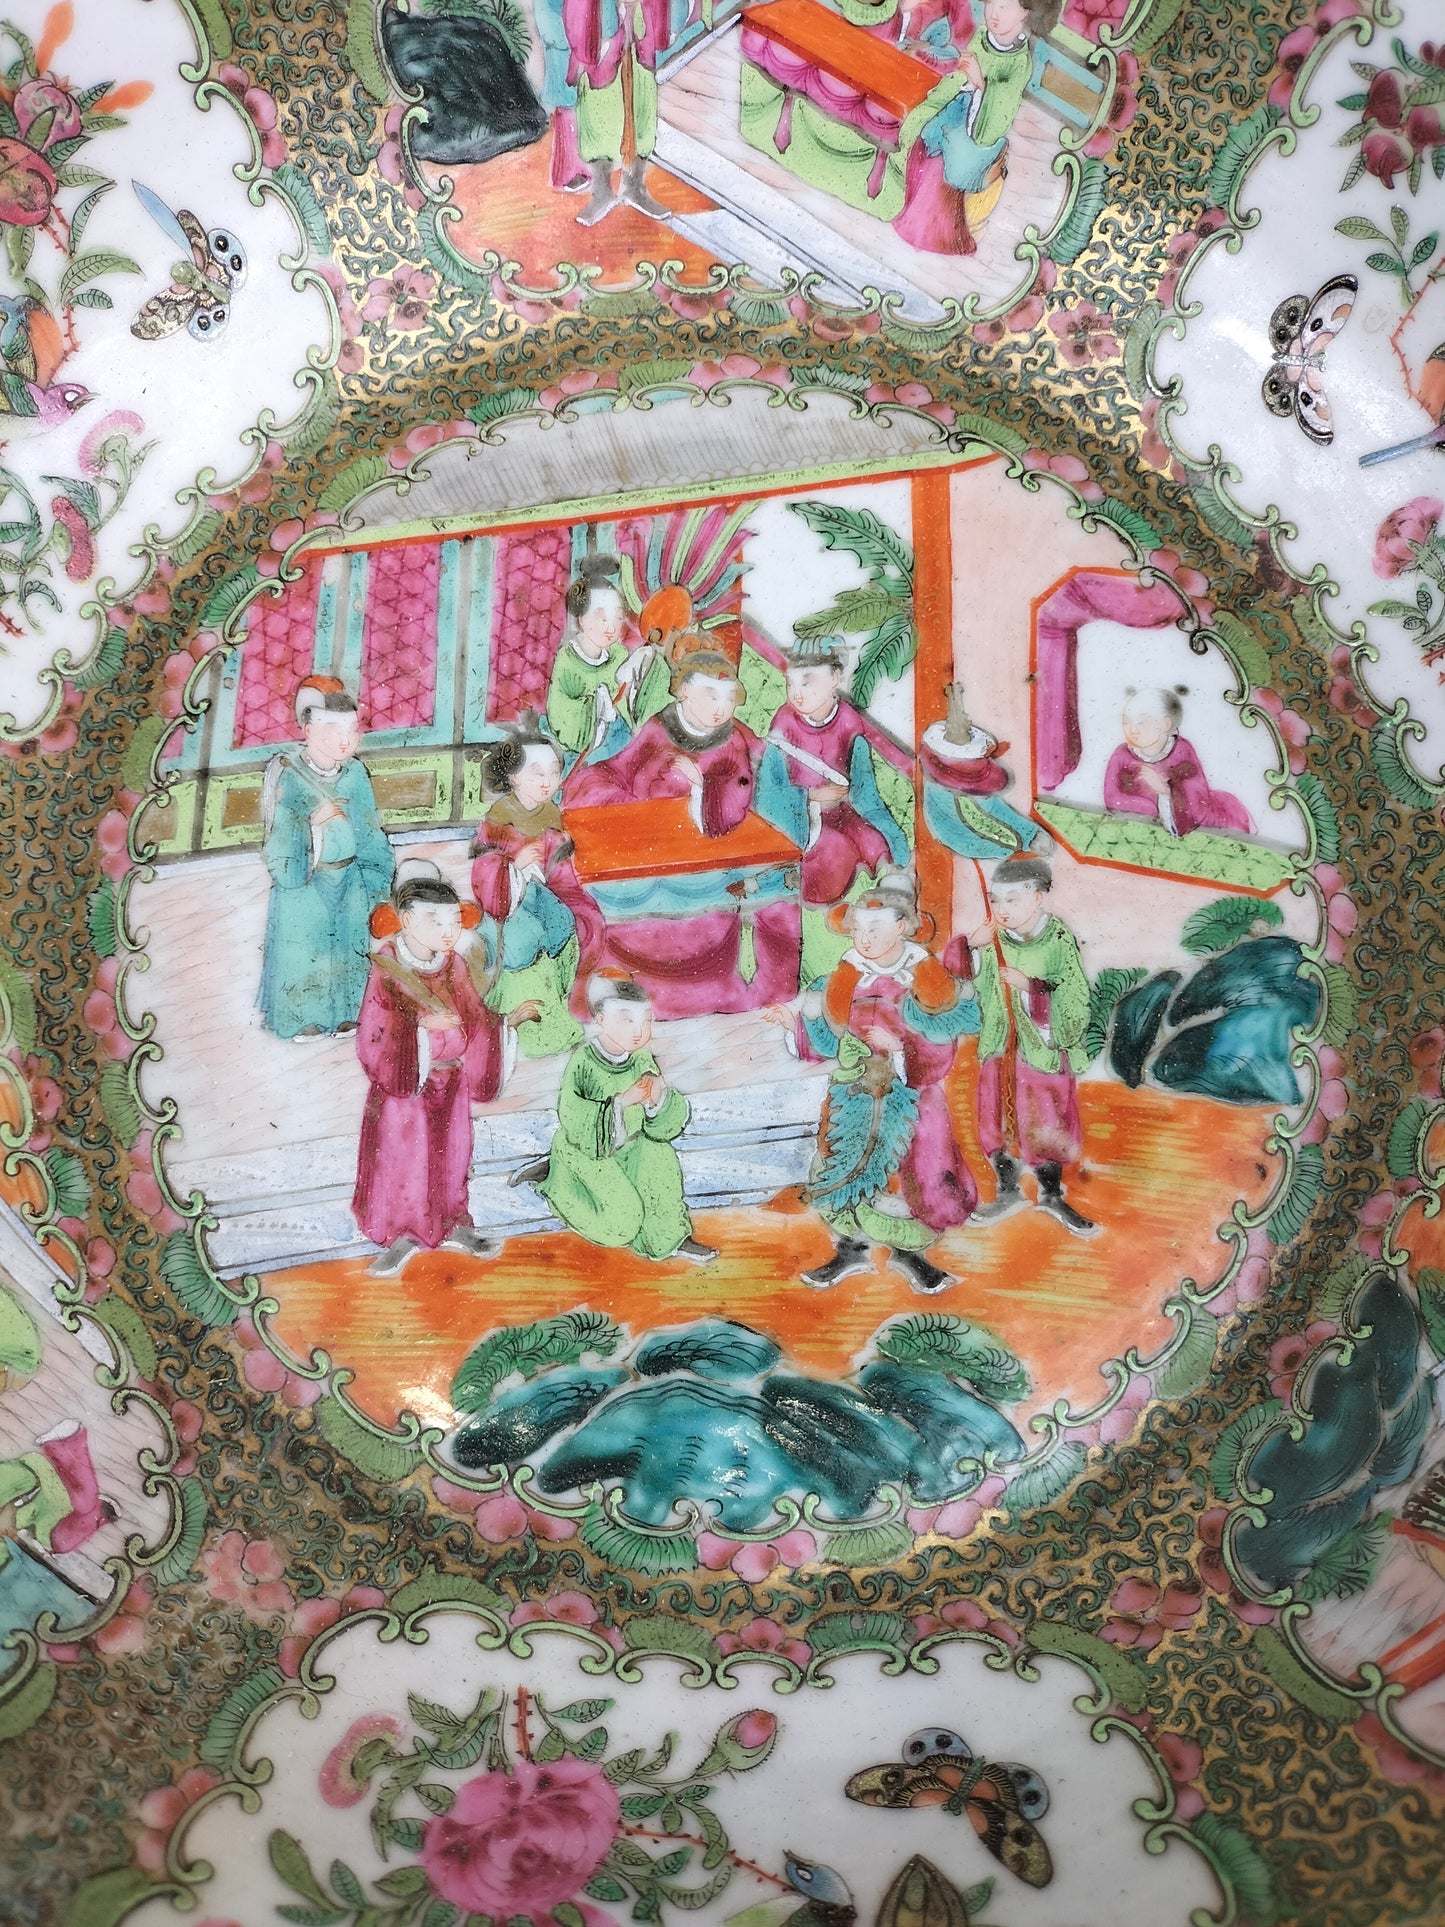 大型 XL 古董中国广州玫瑰花章碗 // 清朝 - 19 世纪